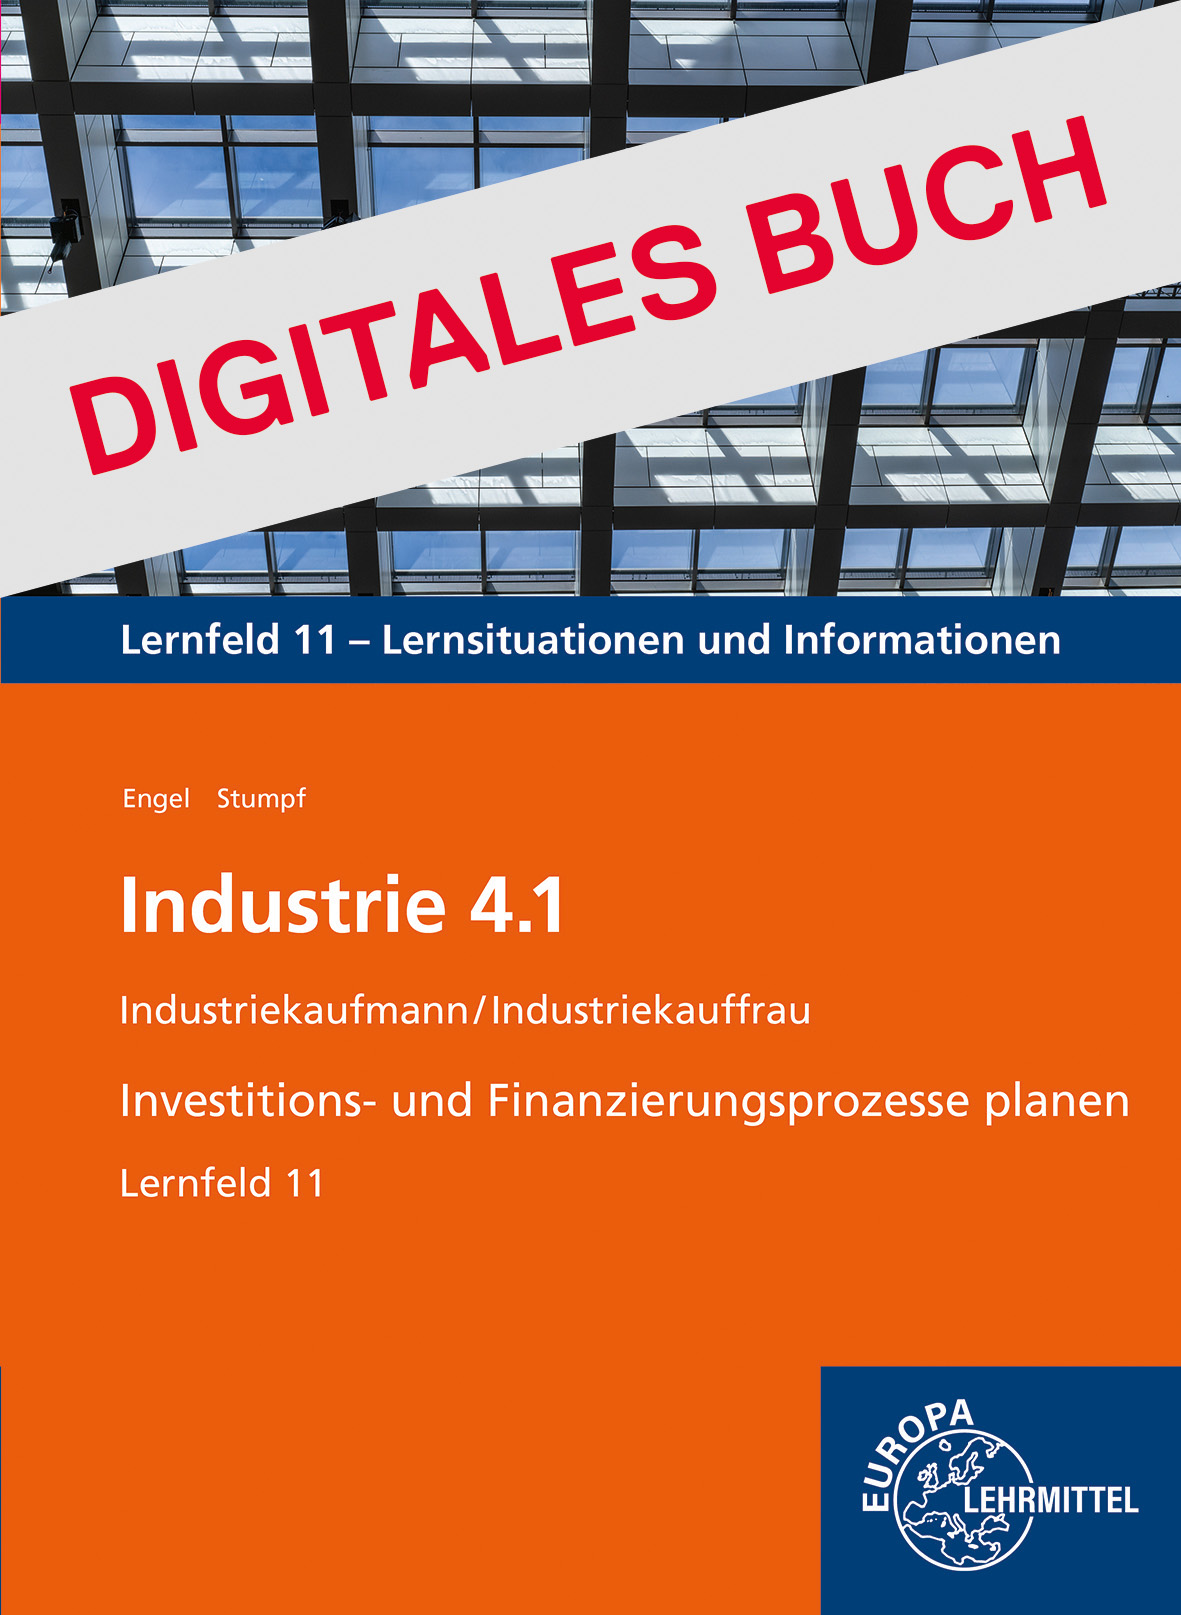 Industrie 4.1, Investitions- und Finanzierungsprozesse planen, LF 11 - Dig. Buch